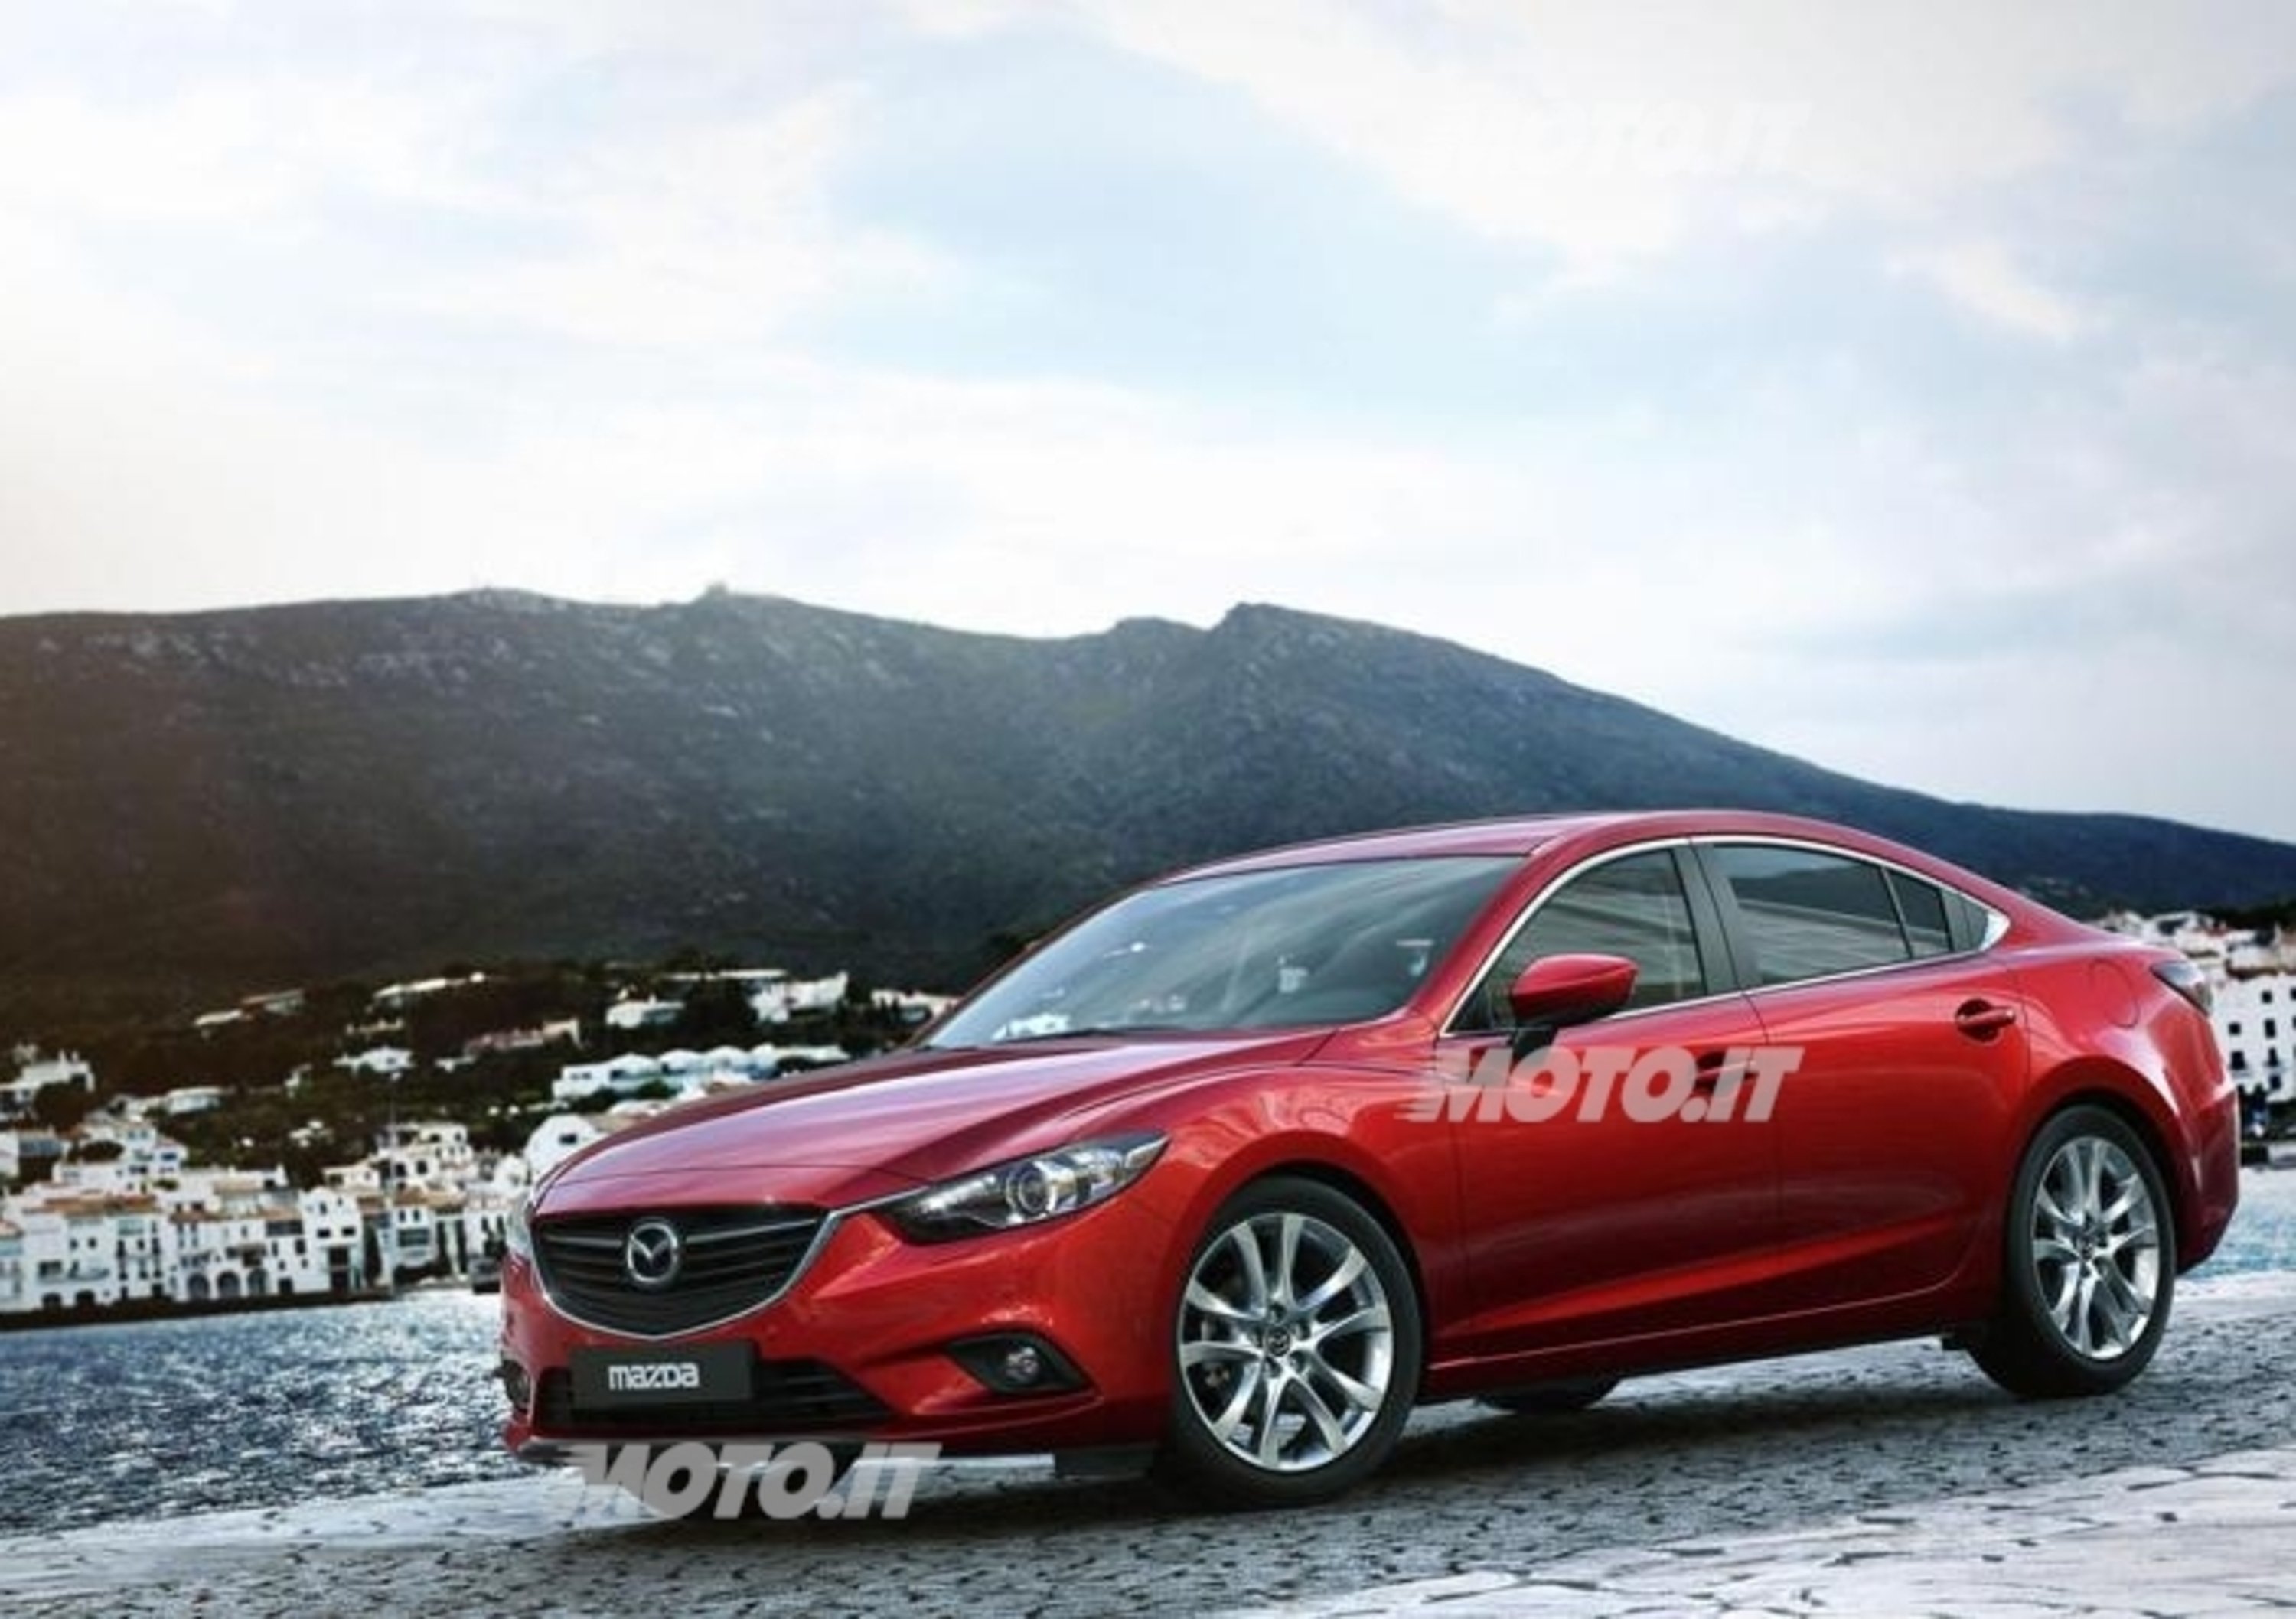 Nuova Mazda6: foto e informazioni ufficiali